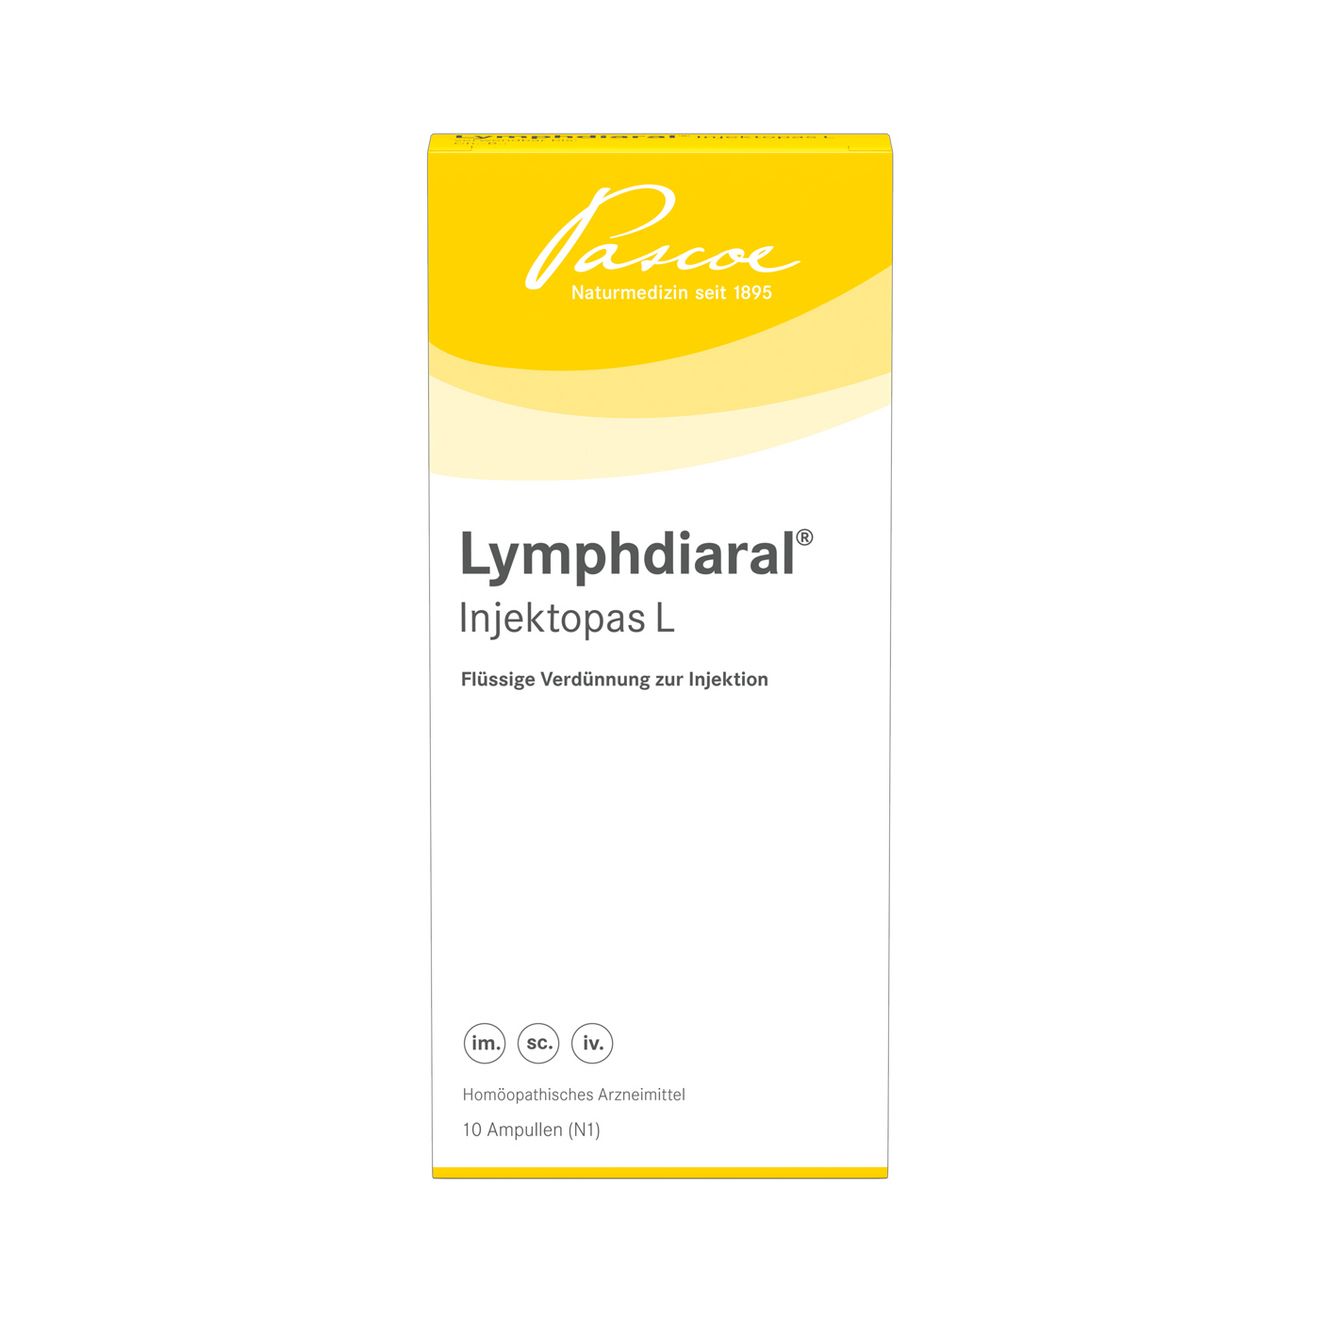 Lymphdiaral Injektopas LLymphdiaral Injektopas L